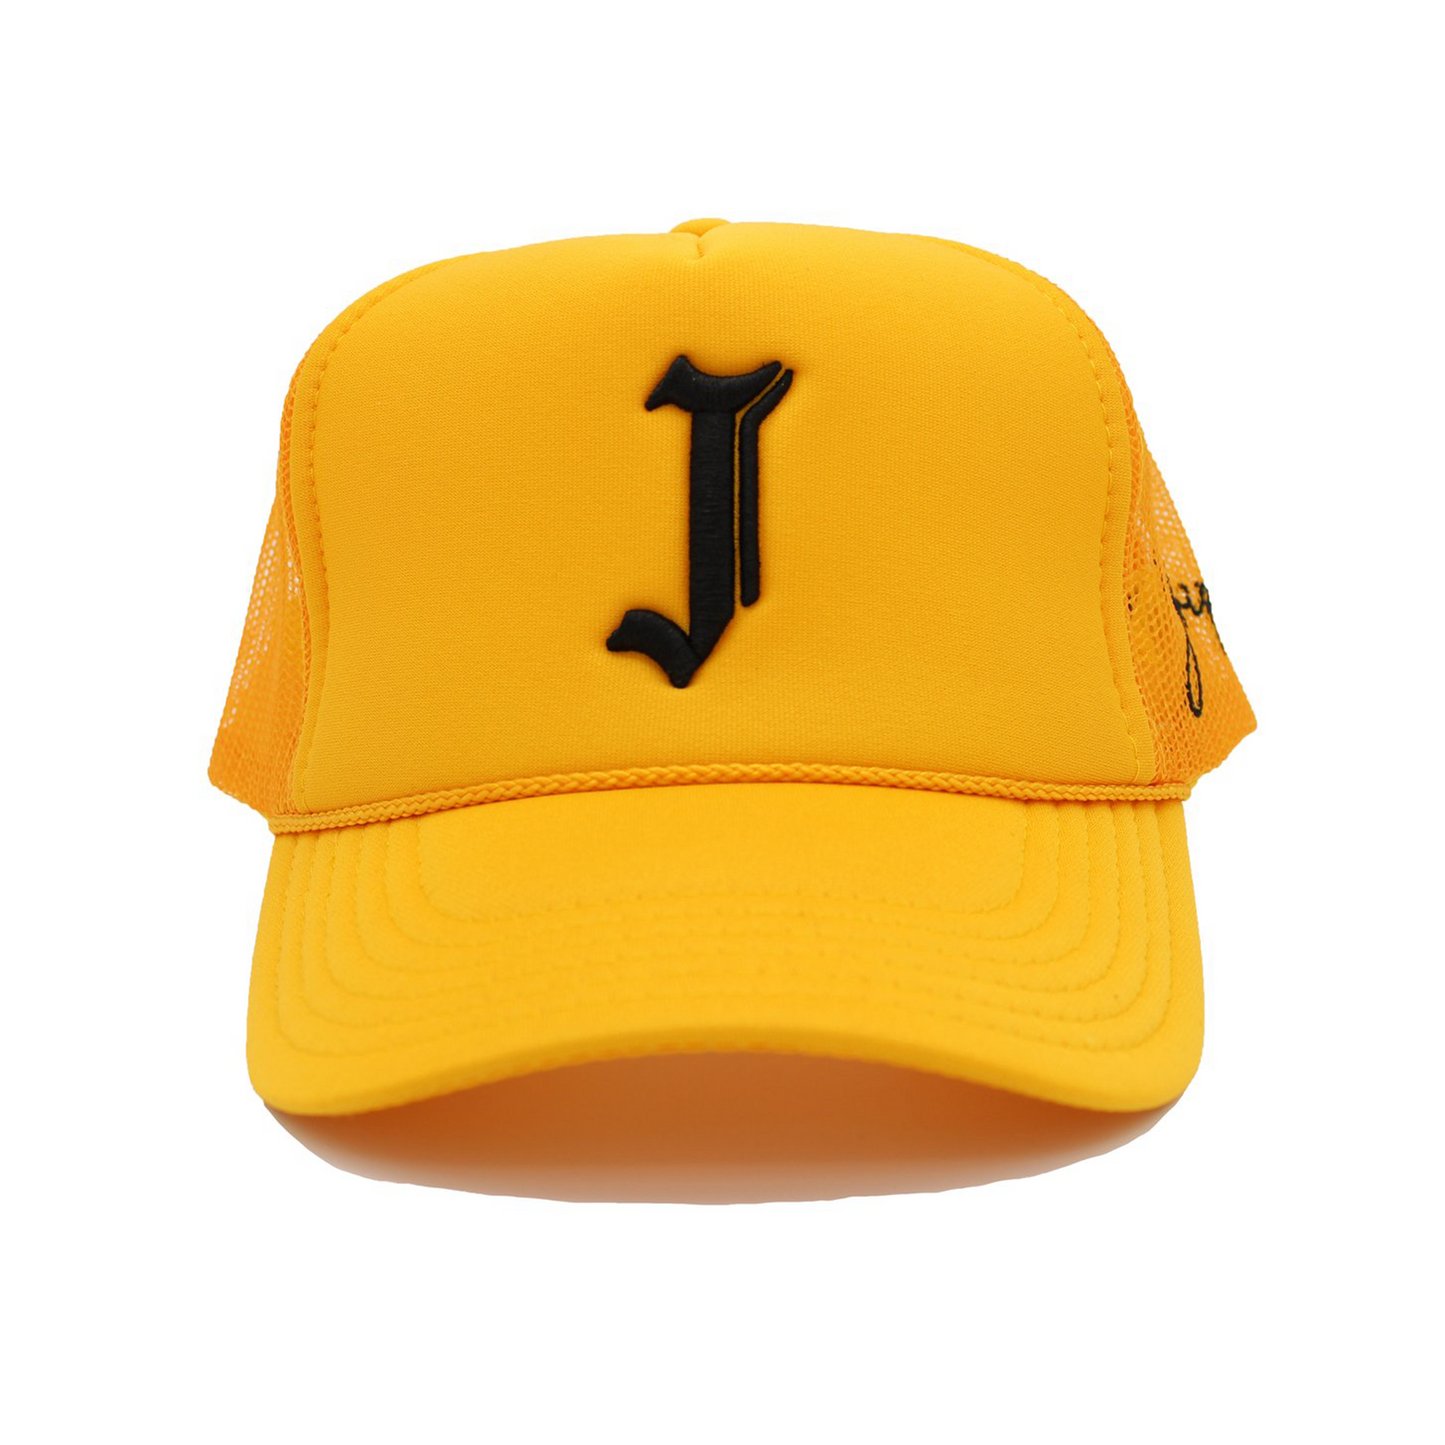 "J" Signature Trucker Hat (YELLOW)